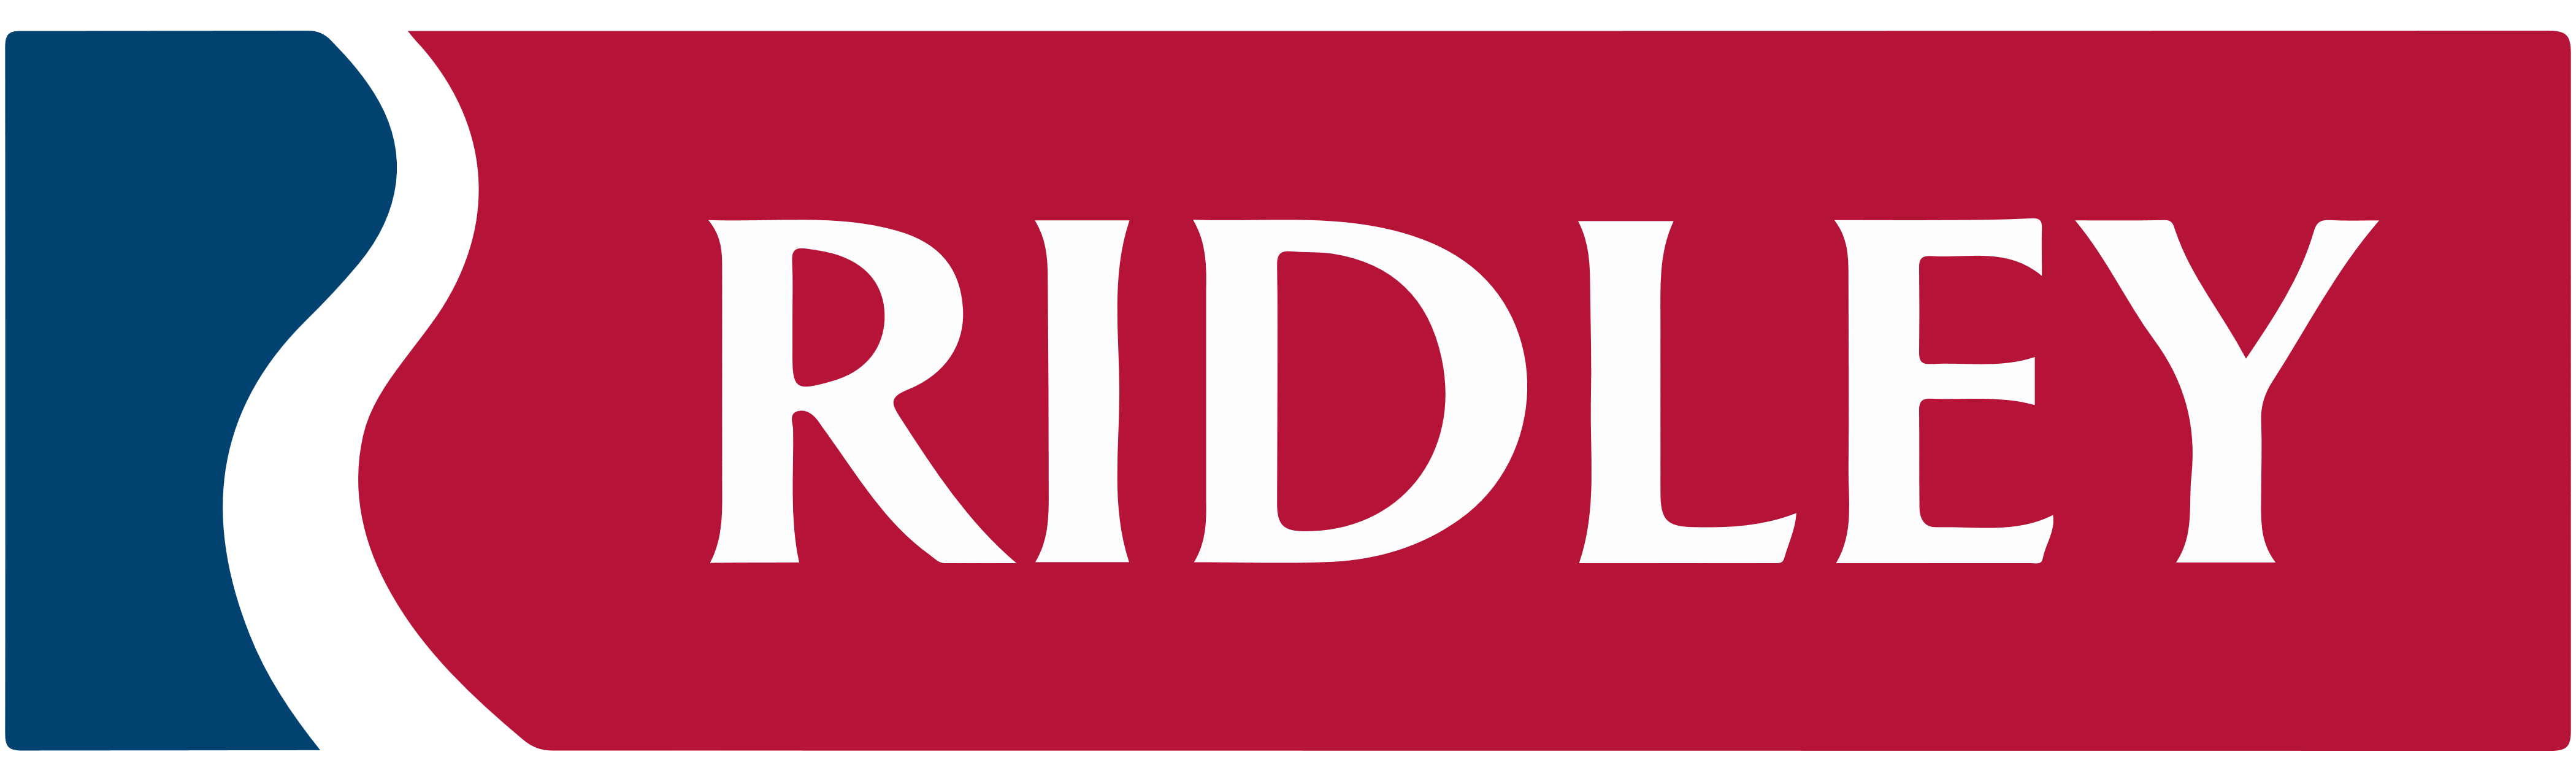 Ridley logo, logotype